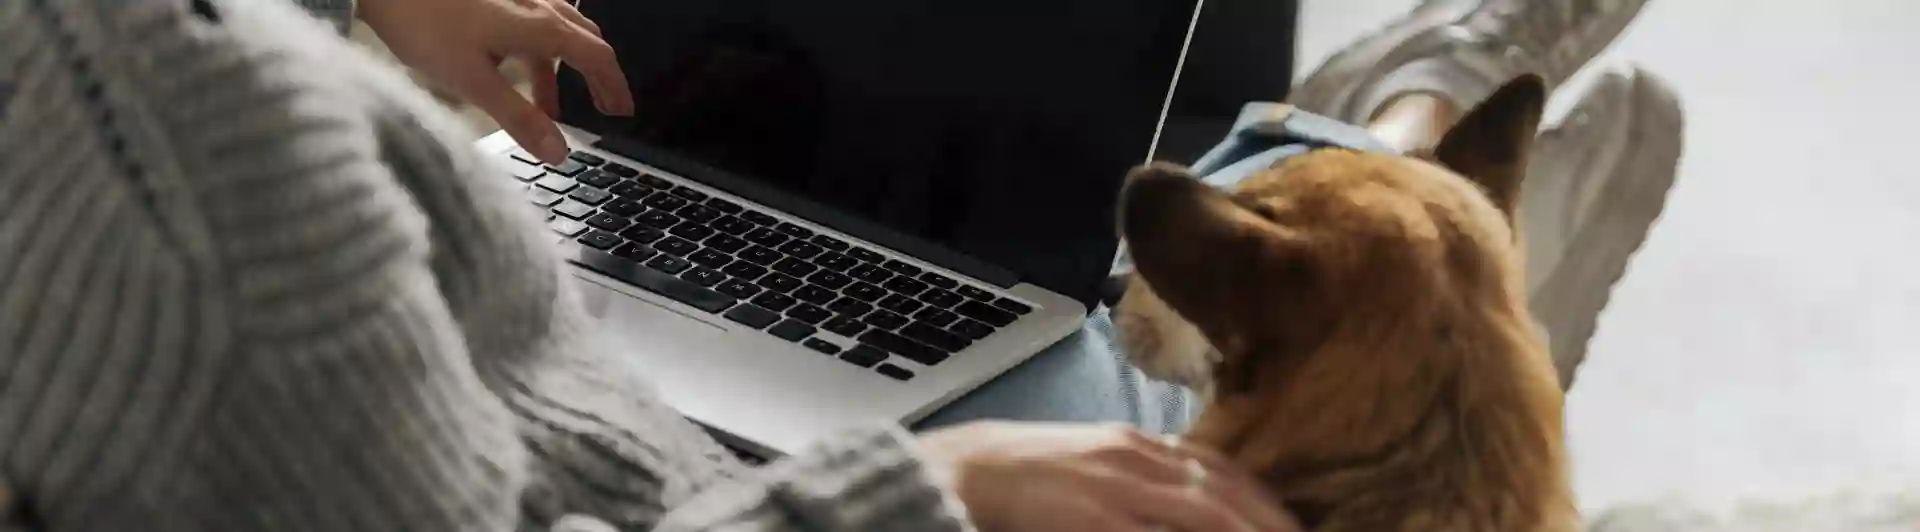 Hund och människa som tittar på en dator.